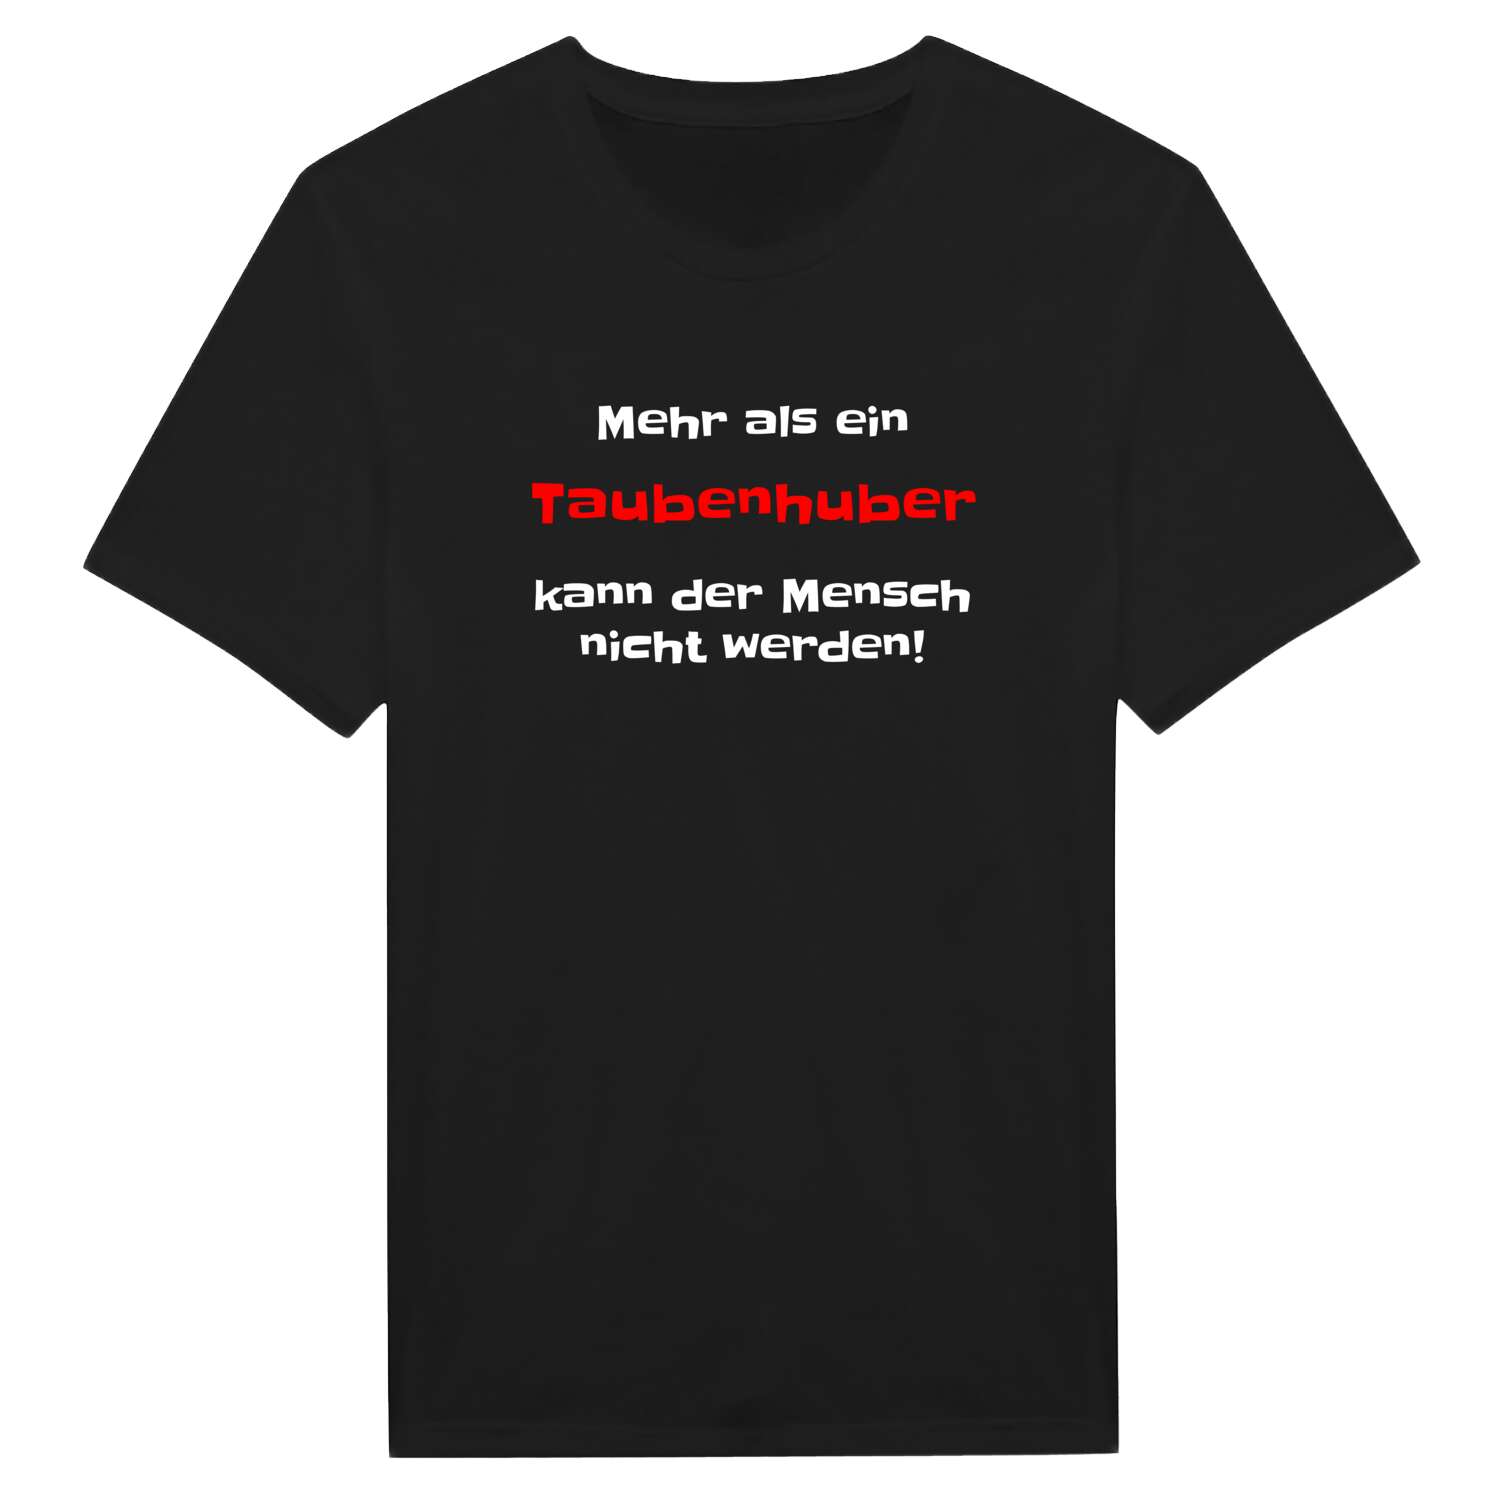 Taubenhub T-Shirt »Mehr als ein«